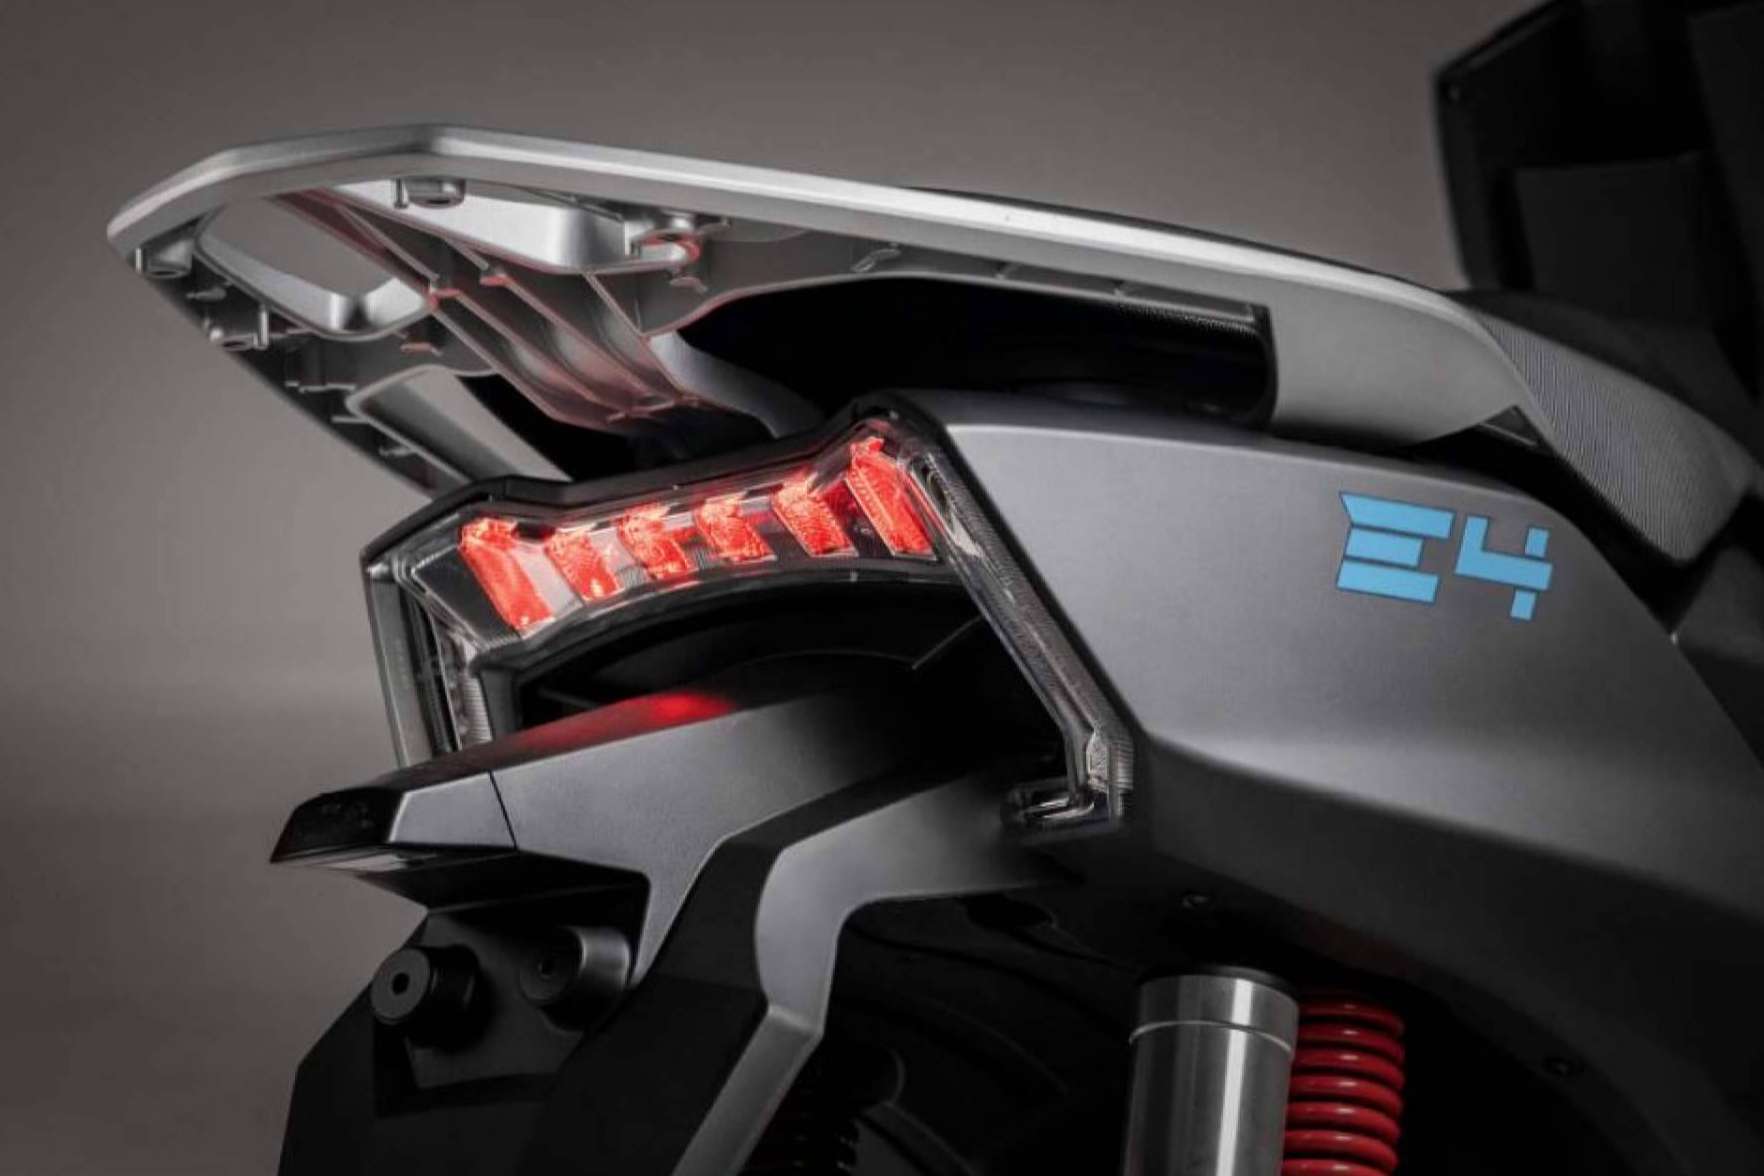 Lifan E4, la revolución eléctrica disponible en Lifan Motos